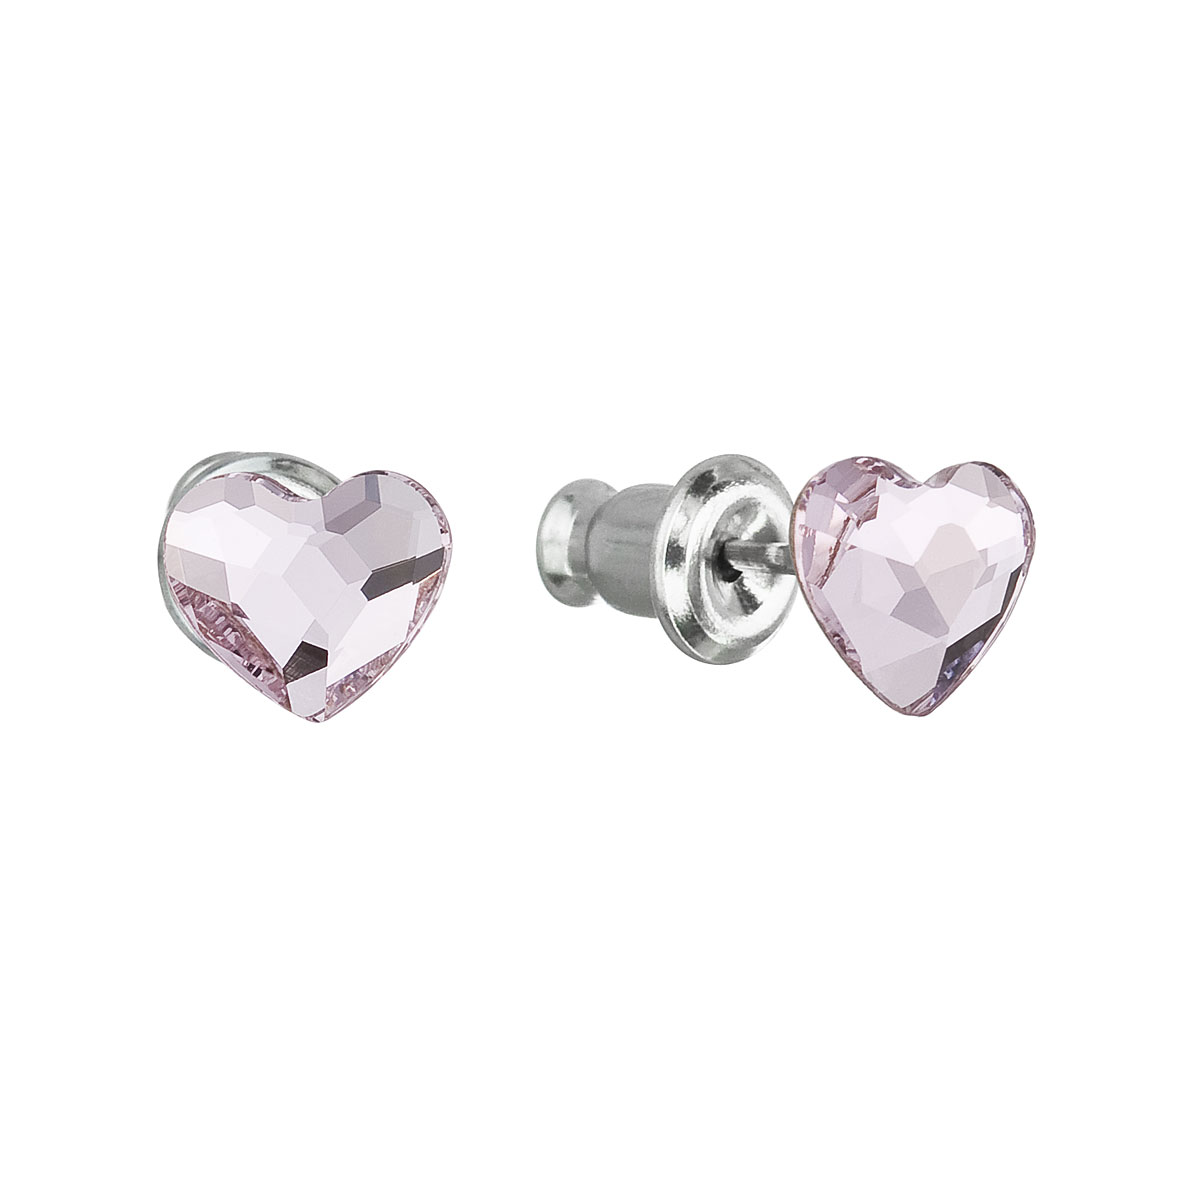 Evolution Group Náušnice se Swarovski krystaly růžová srdce 51050.3 rose